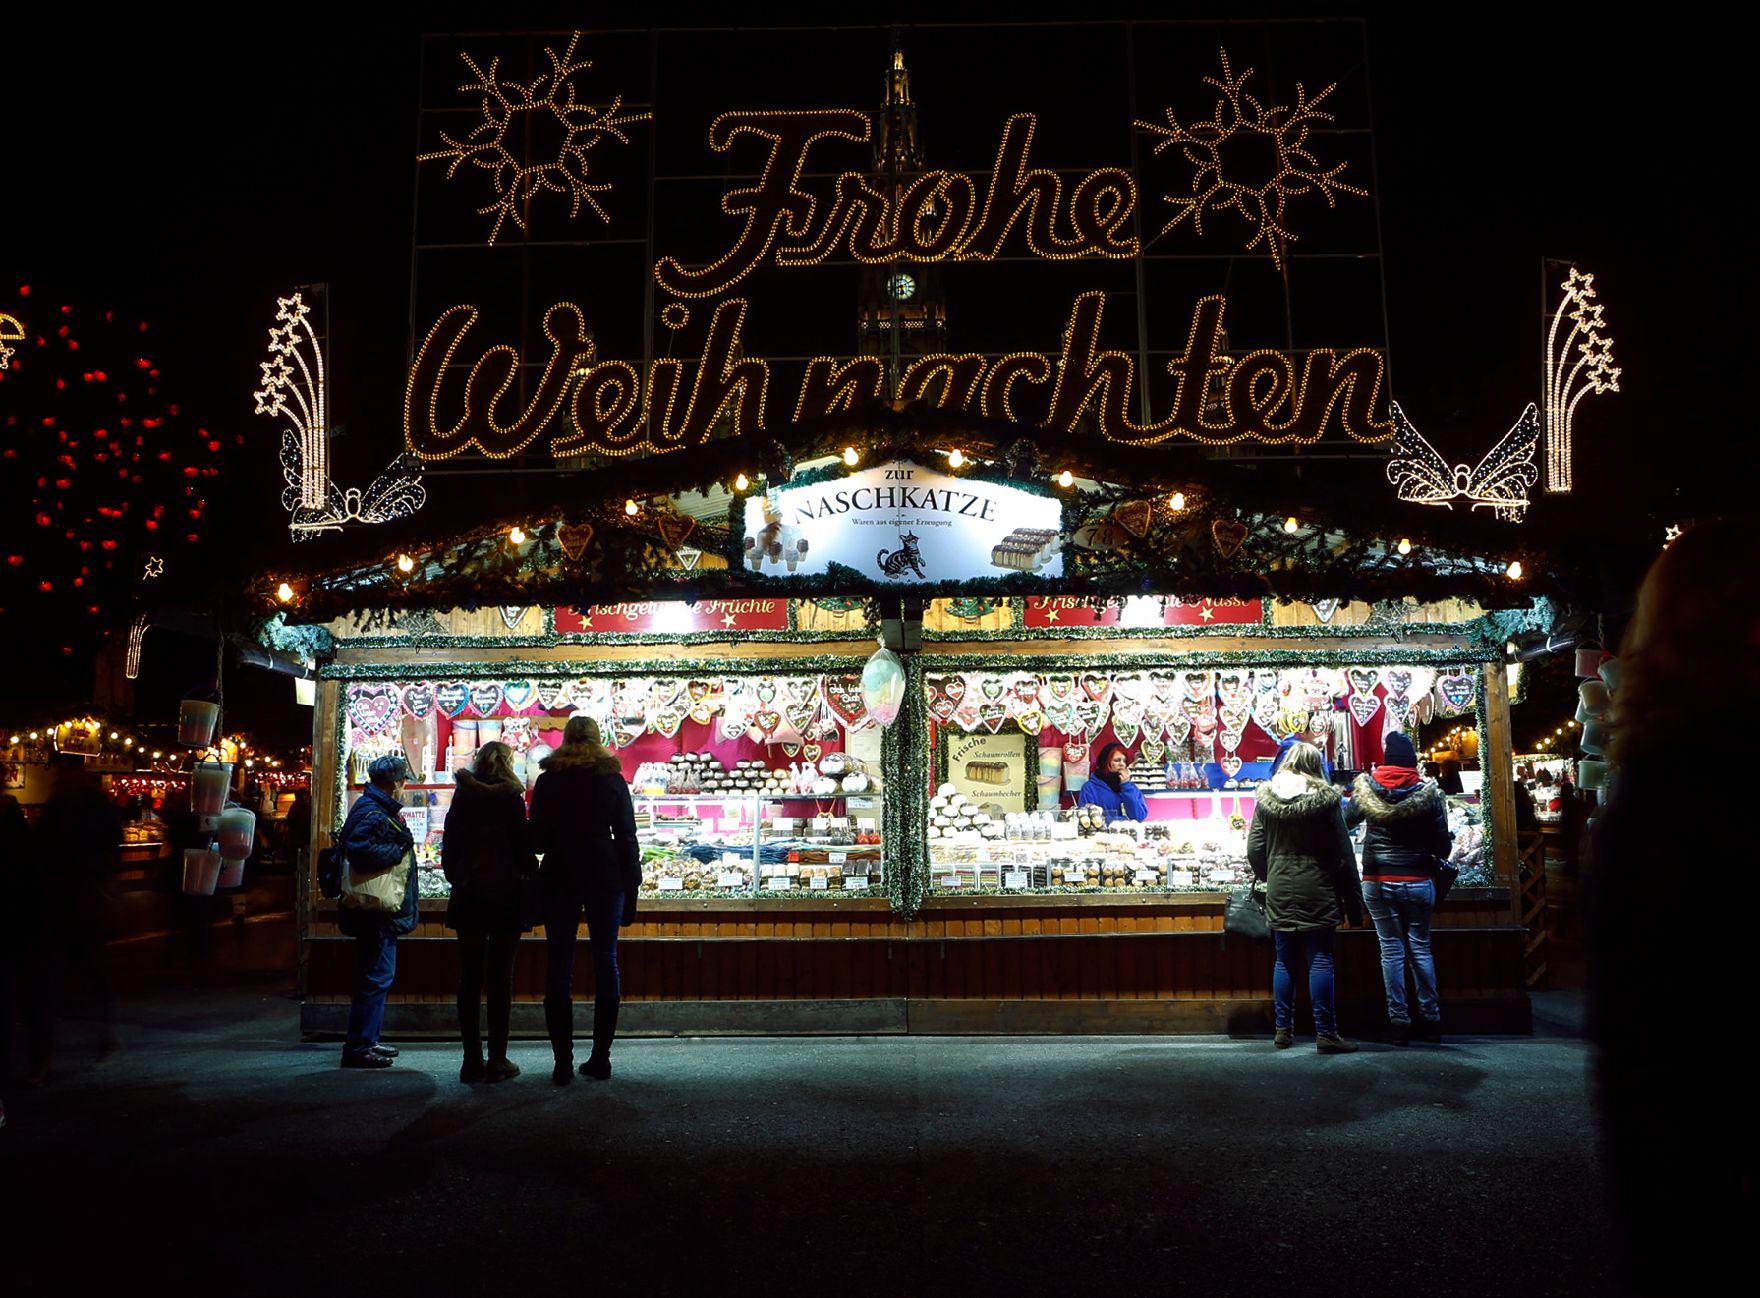 Der Christkindlmarkt am Rathausplatz bei Nacht. Schlagworte: Abend, Beleuchtung, Kugeln, Marktstand, Menschen, Sehenswürdigkeit, Stadtlandschaften, Weihnachten